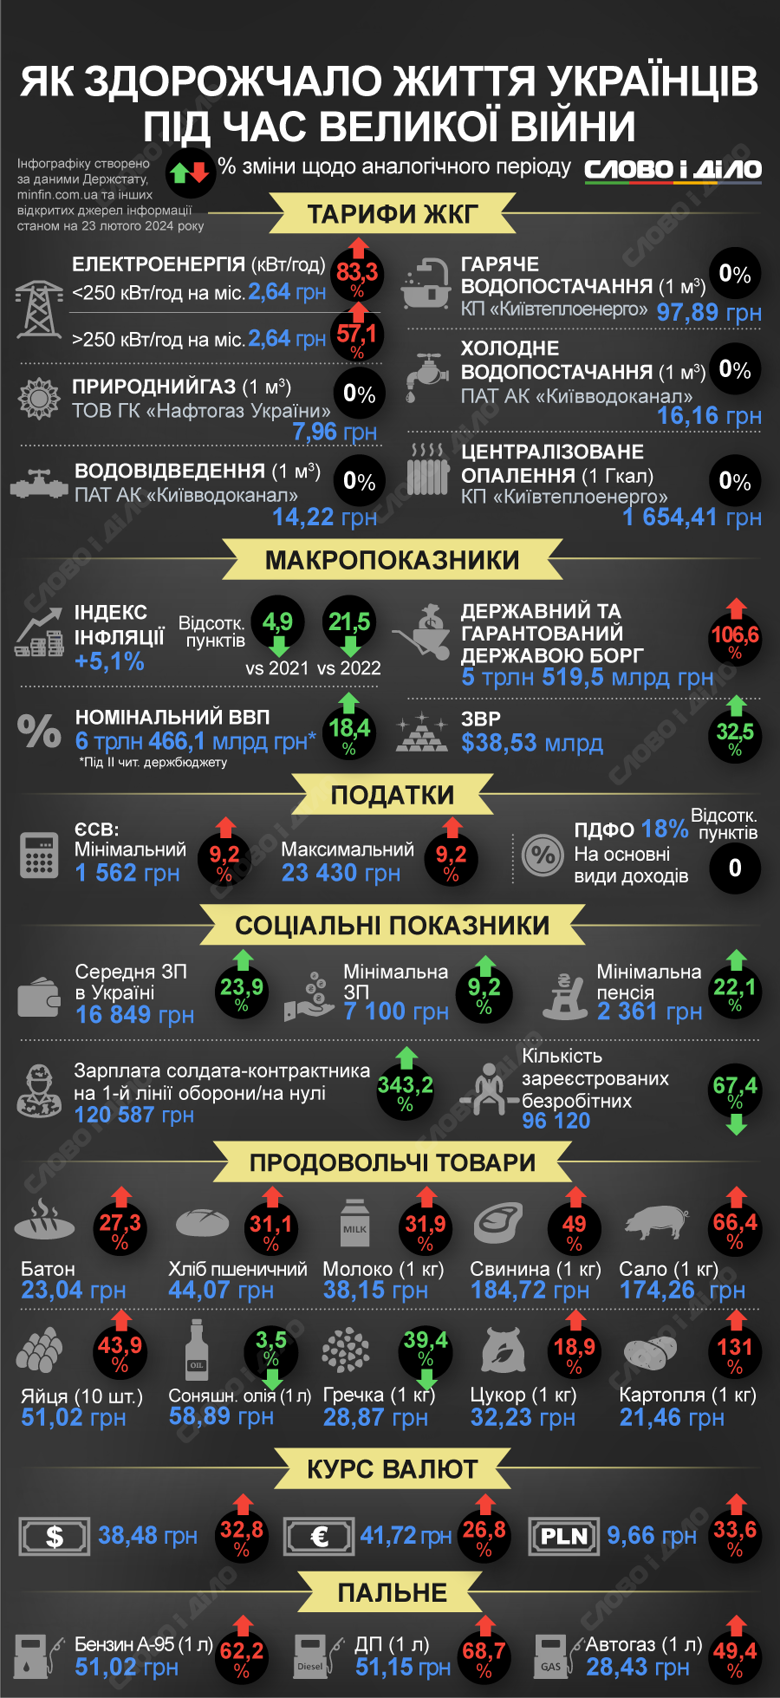 Как за два года большой войны в Украине изменились цены, зарплаты, стоимость коммунальных услуг, курс доллара – на инфографике.